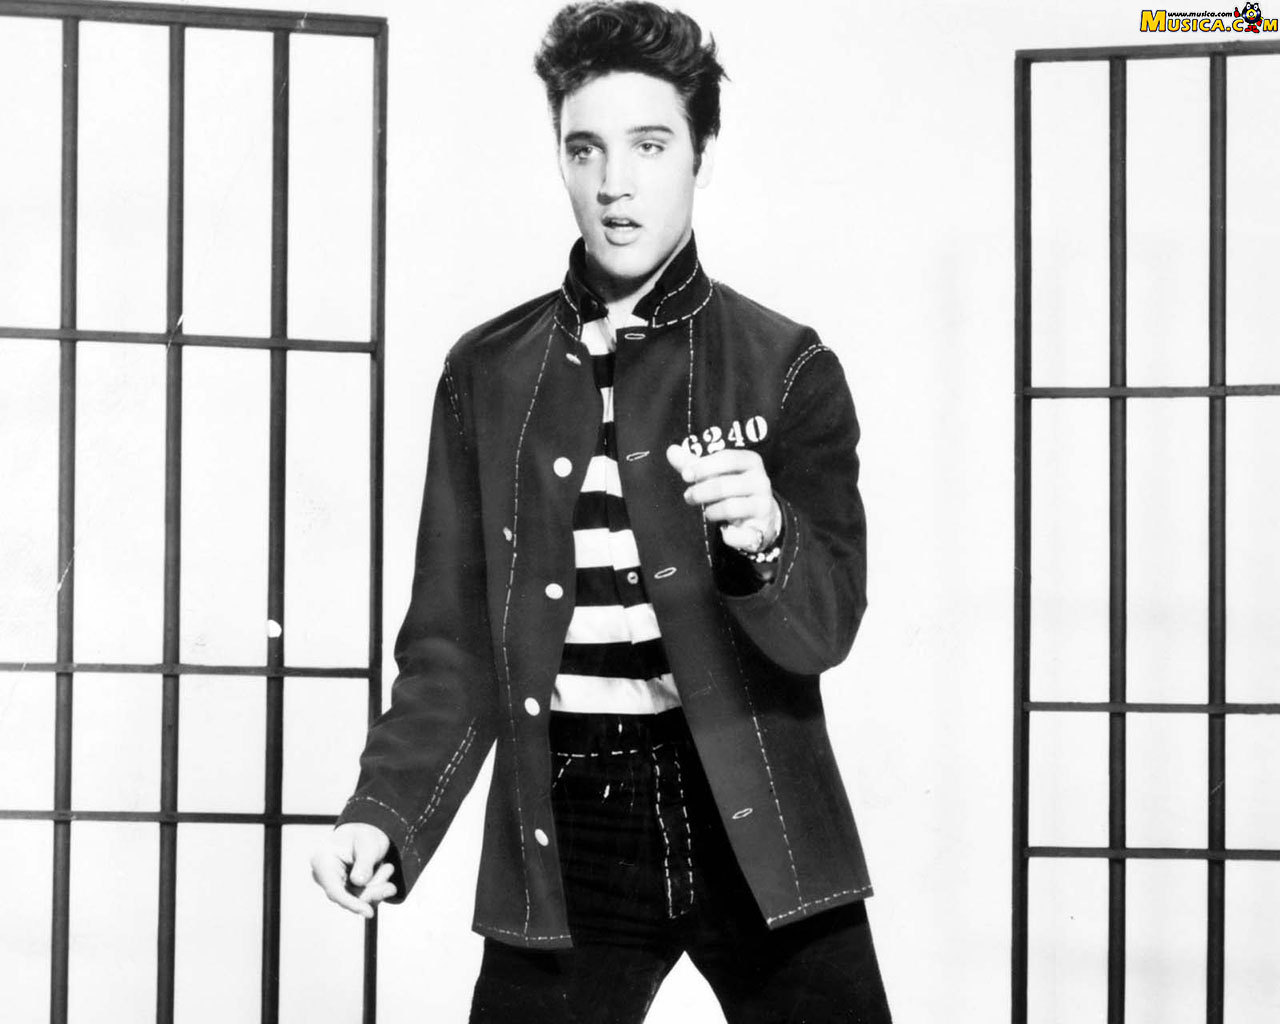 Fondo de pantalla de Elvis Presley